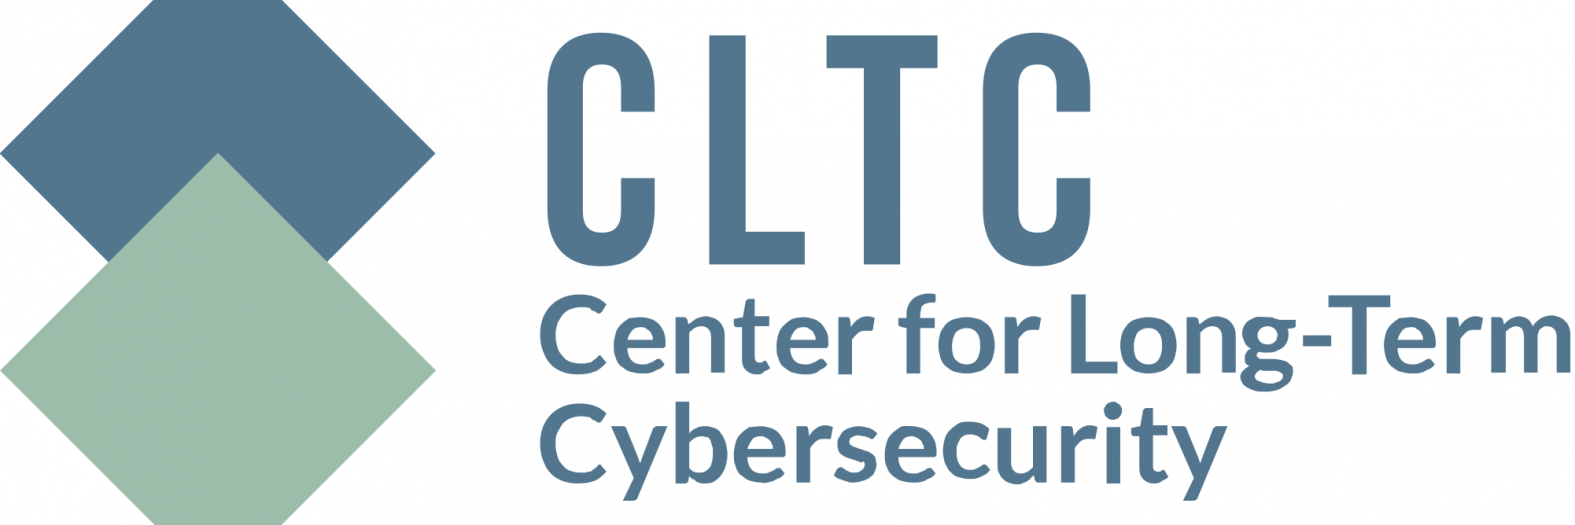 cltc-logo_0.png